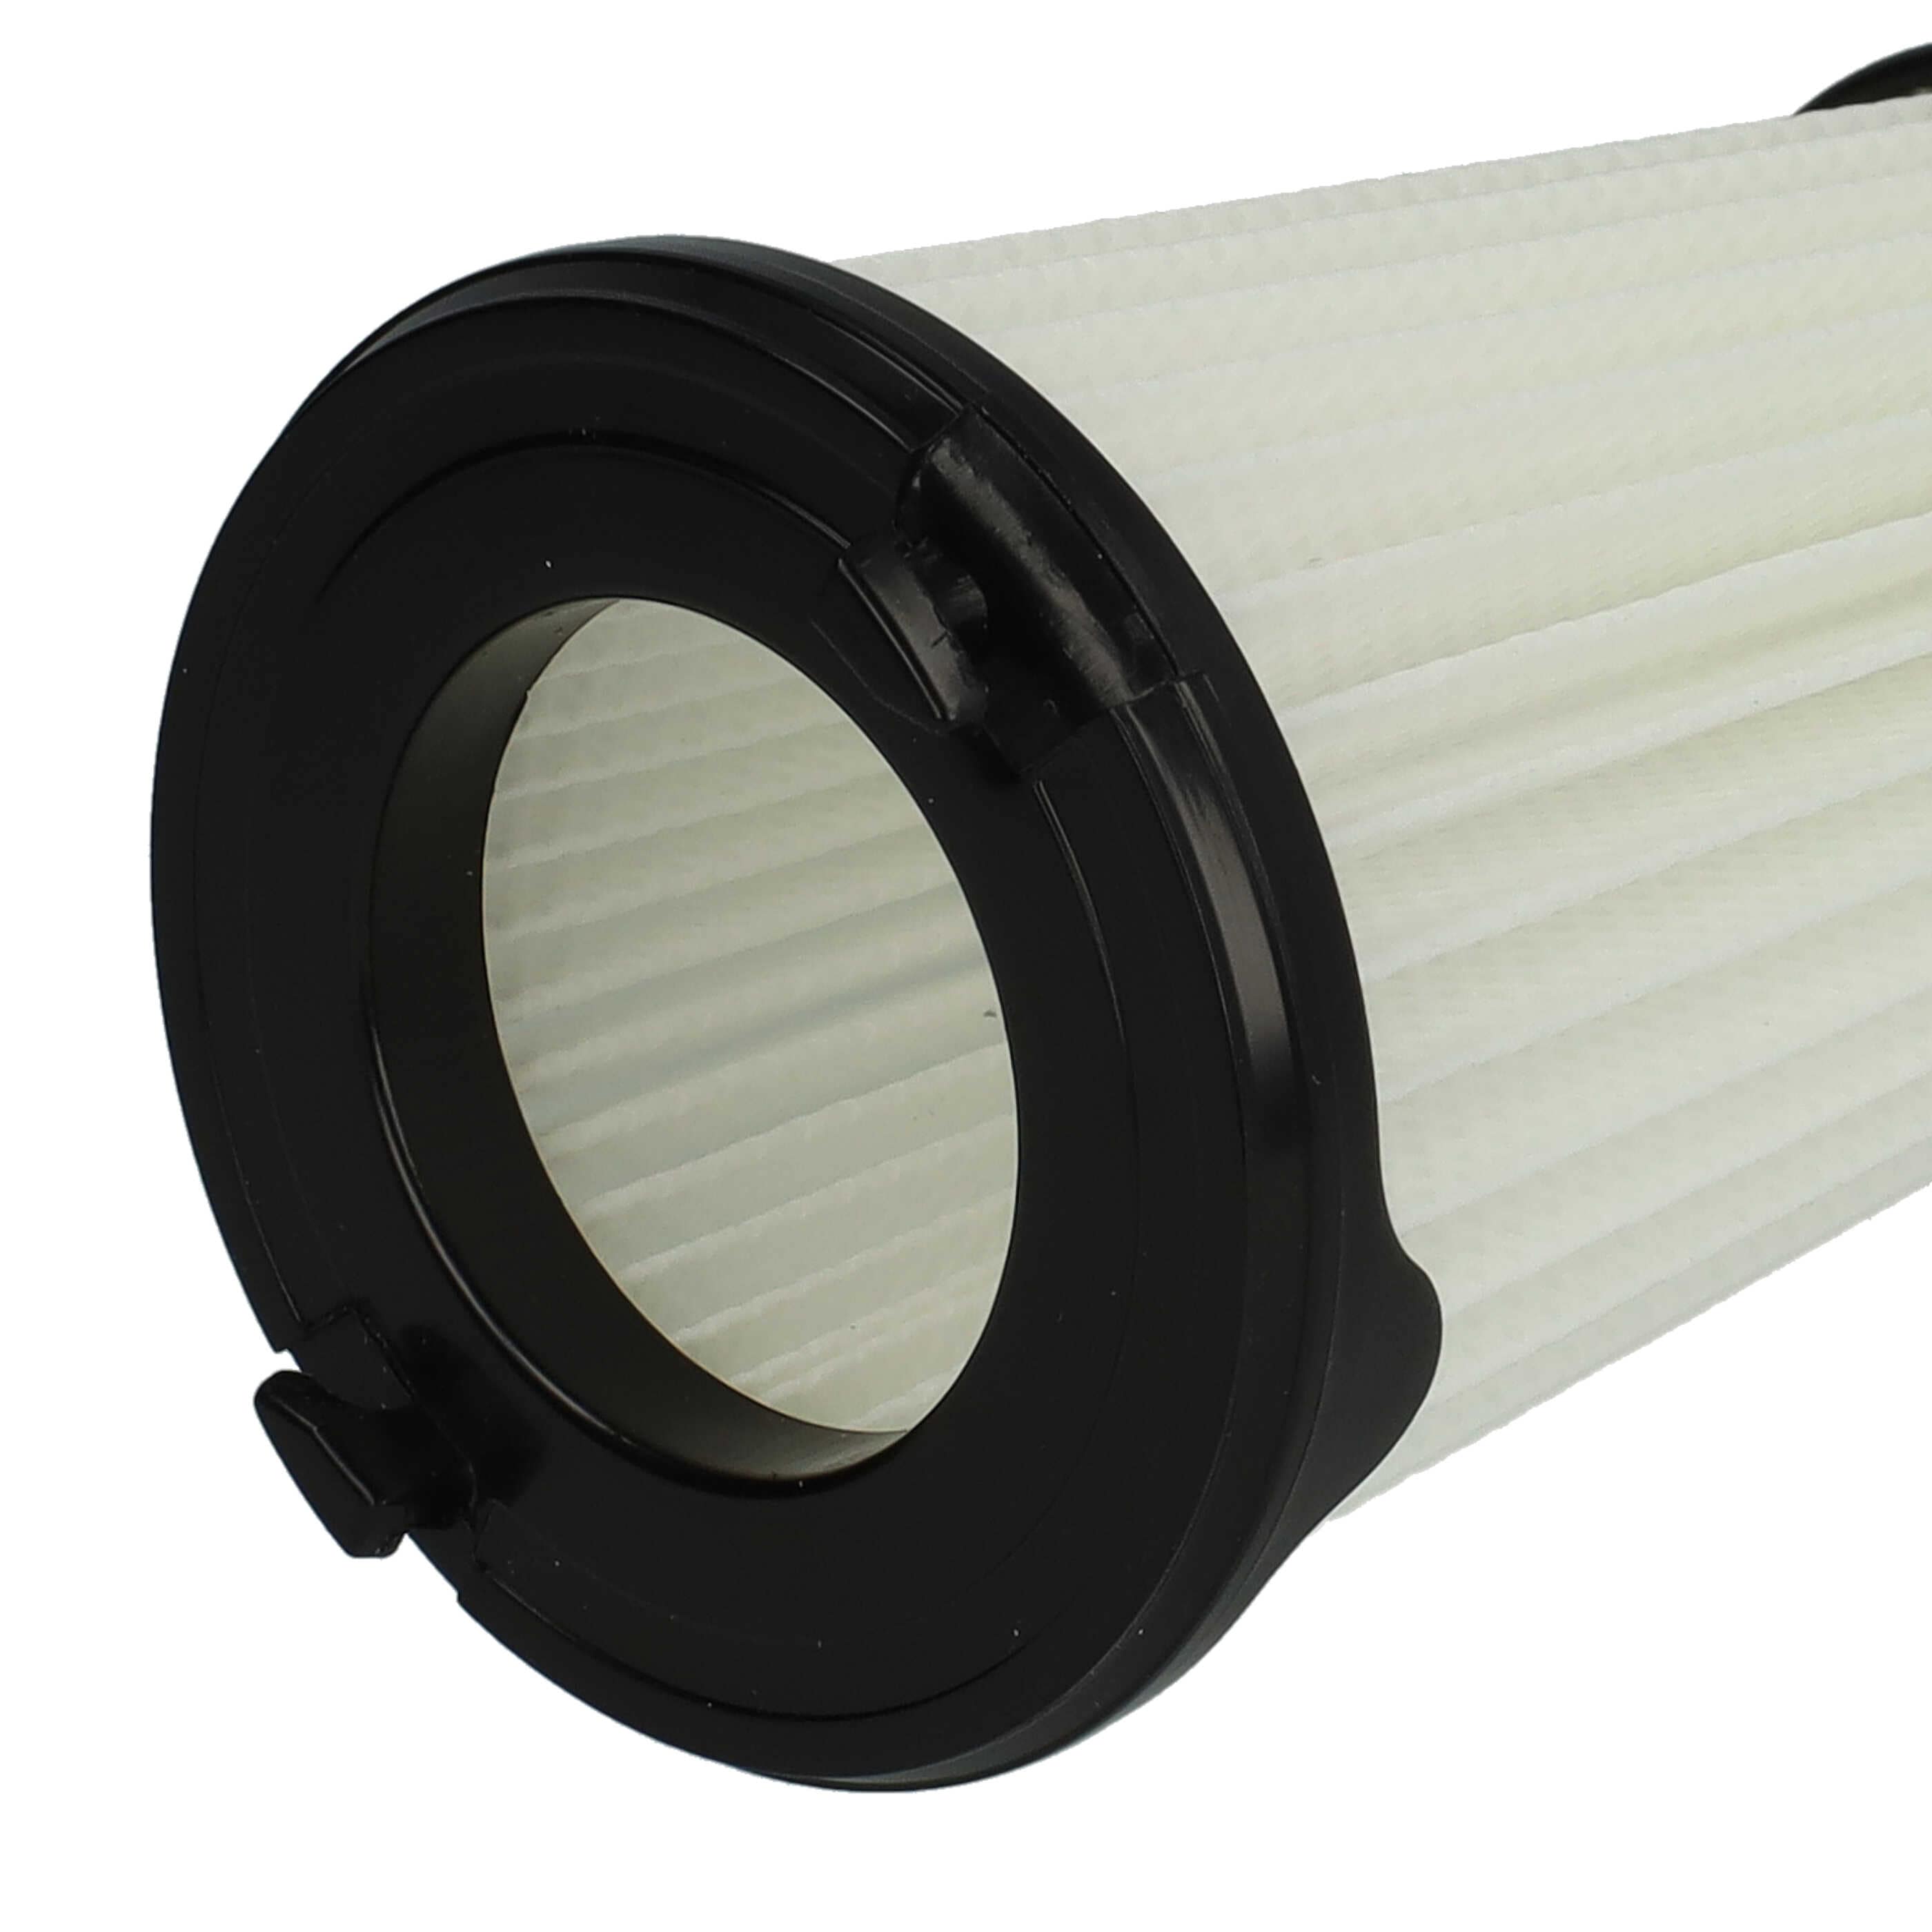 2x Filtre remplace AEG AEF150, 9001683755, 90094073100 pour aspirateur - filtre à lamelles